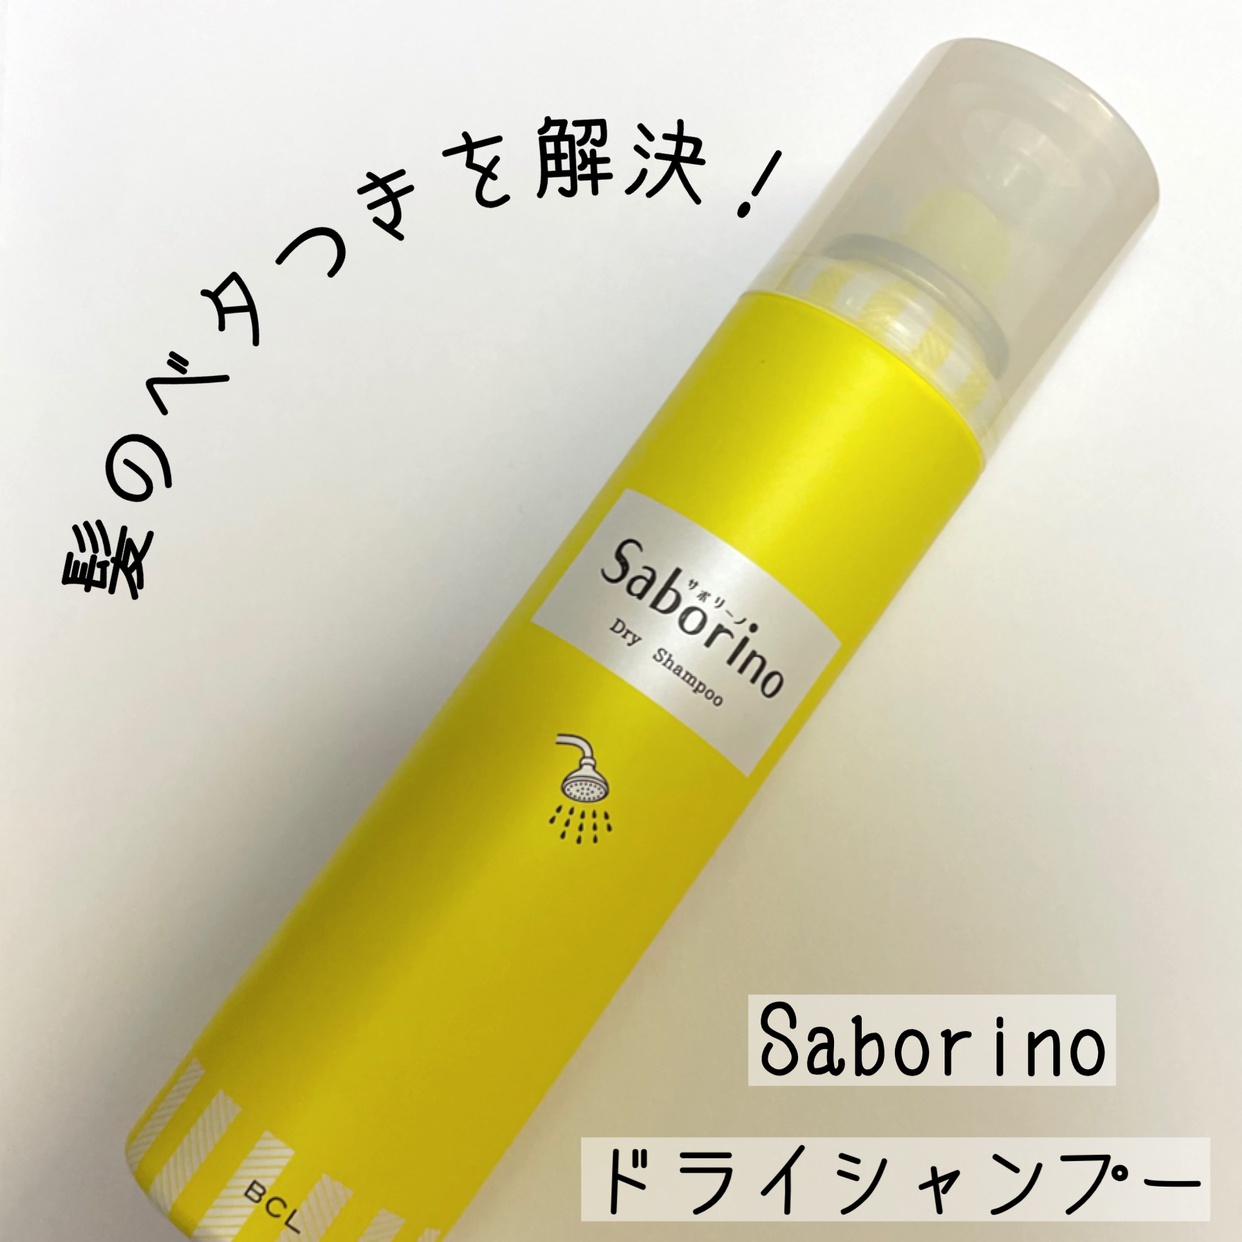 Saborino(サボリーノ)髪を洗いまスプレーを使ったおばけパンダさんのクチコミ画像1